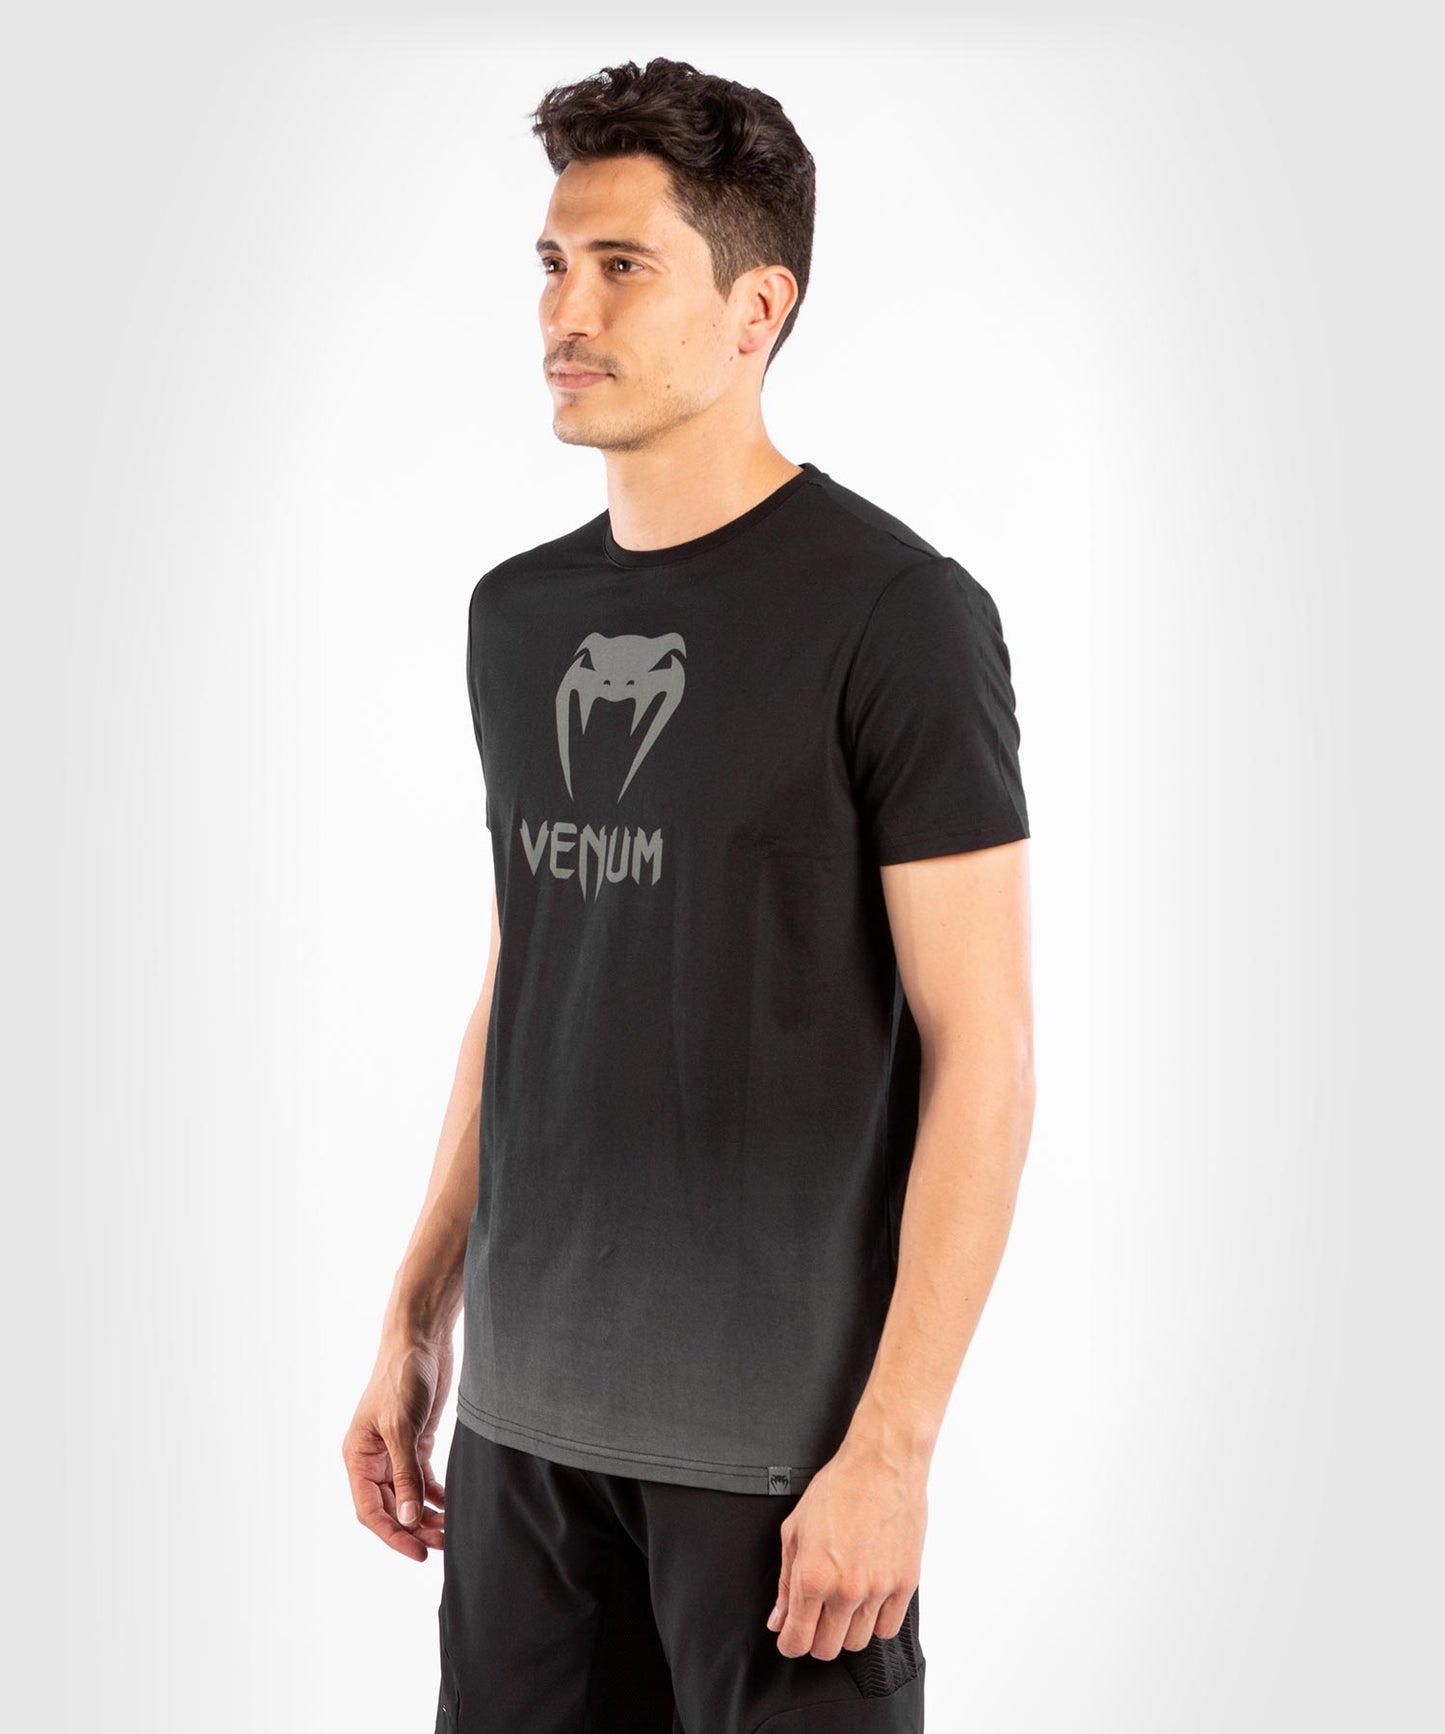 Camiseta Venum Classic - Negro/Gris oscuro